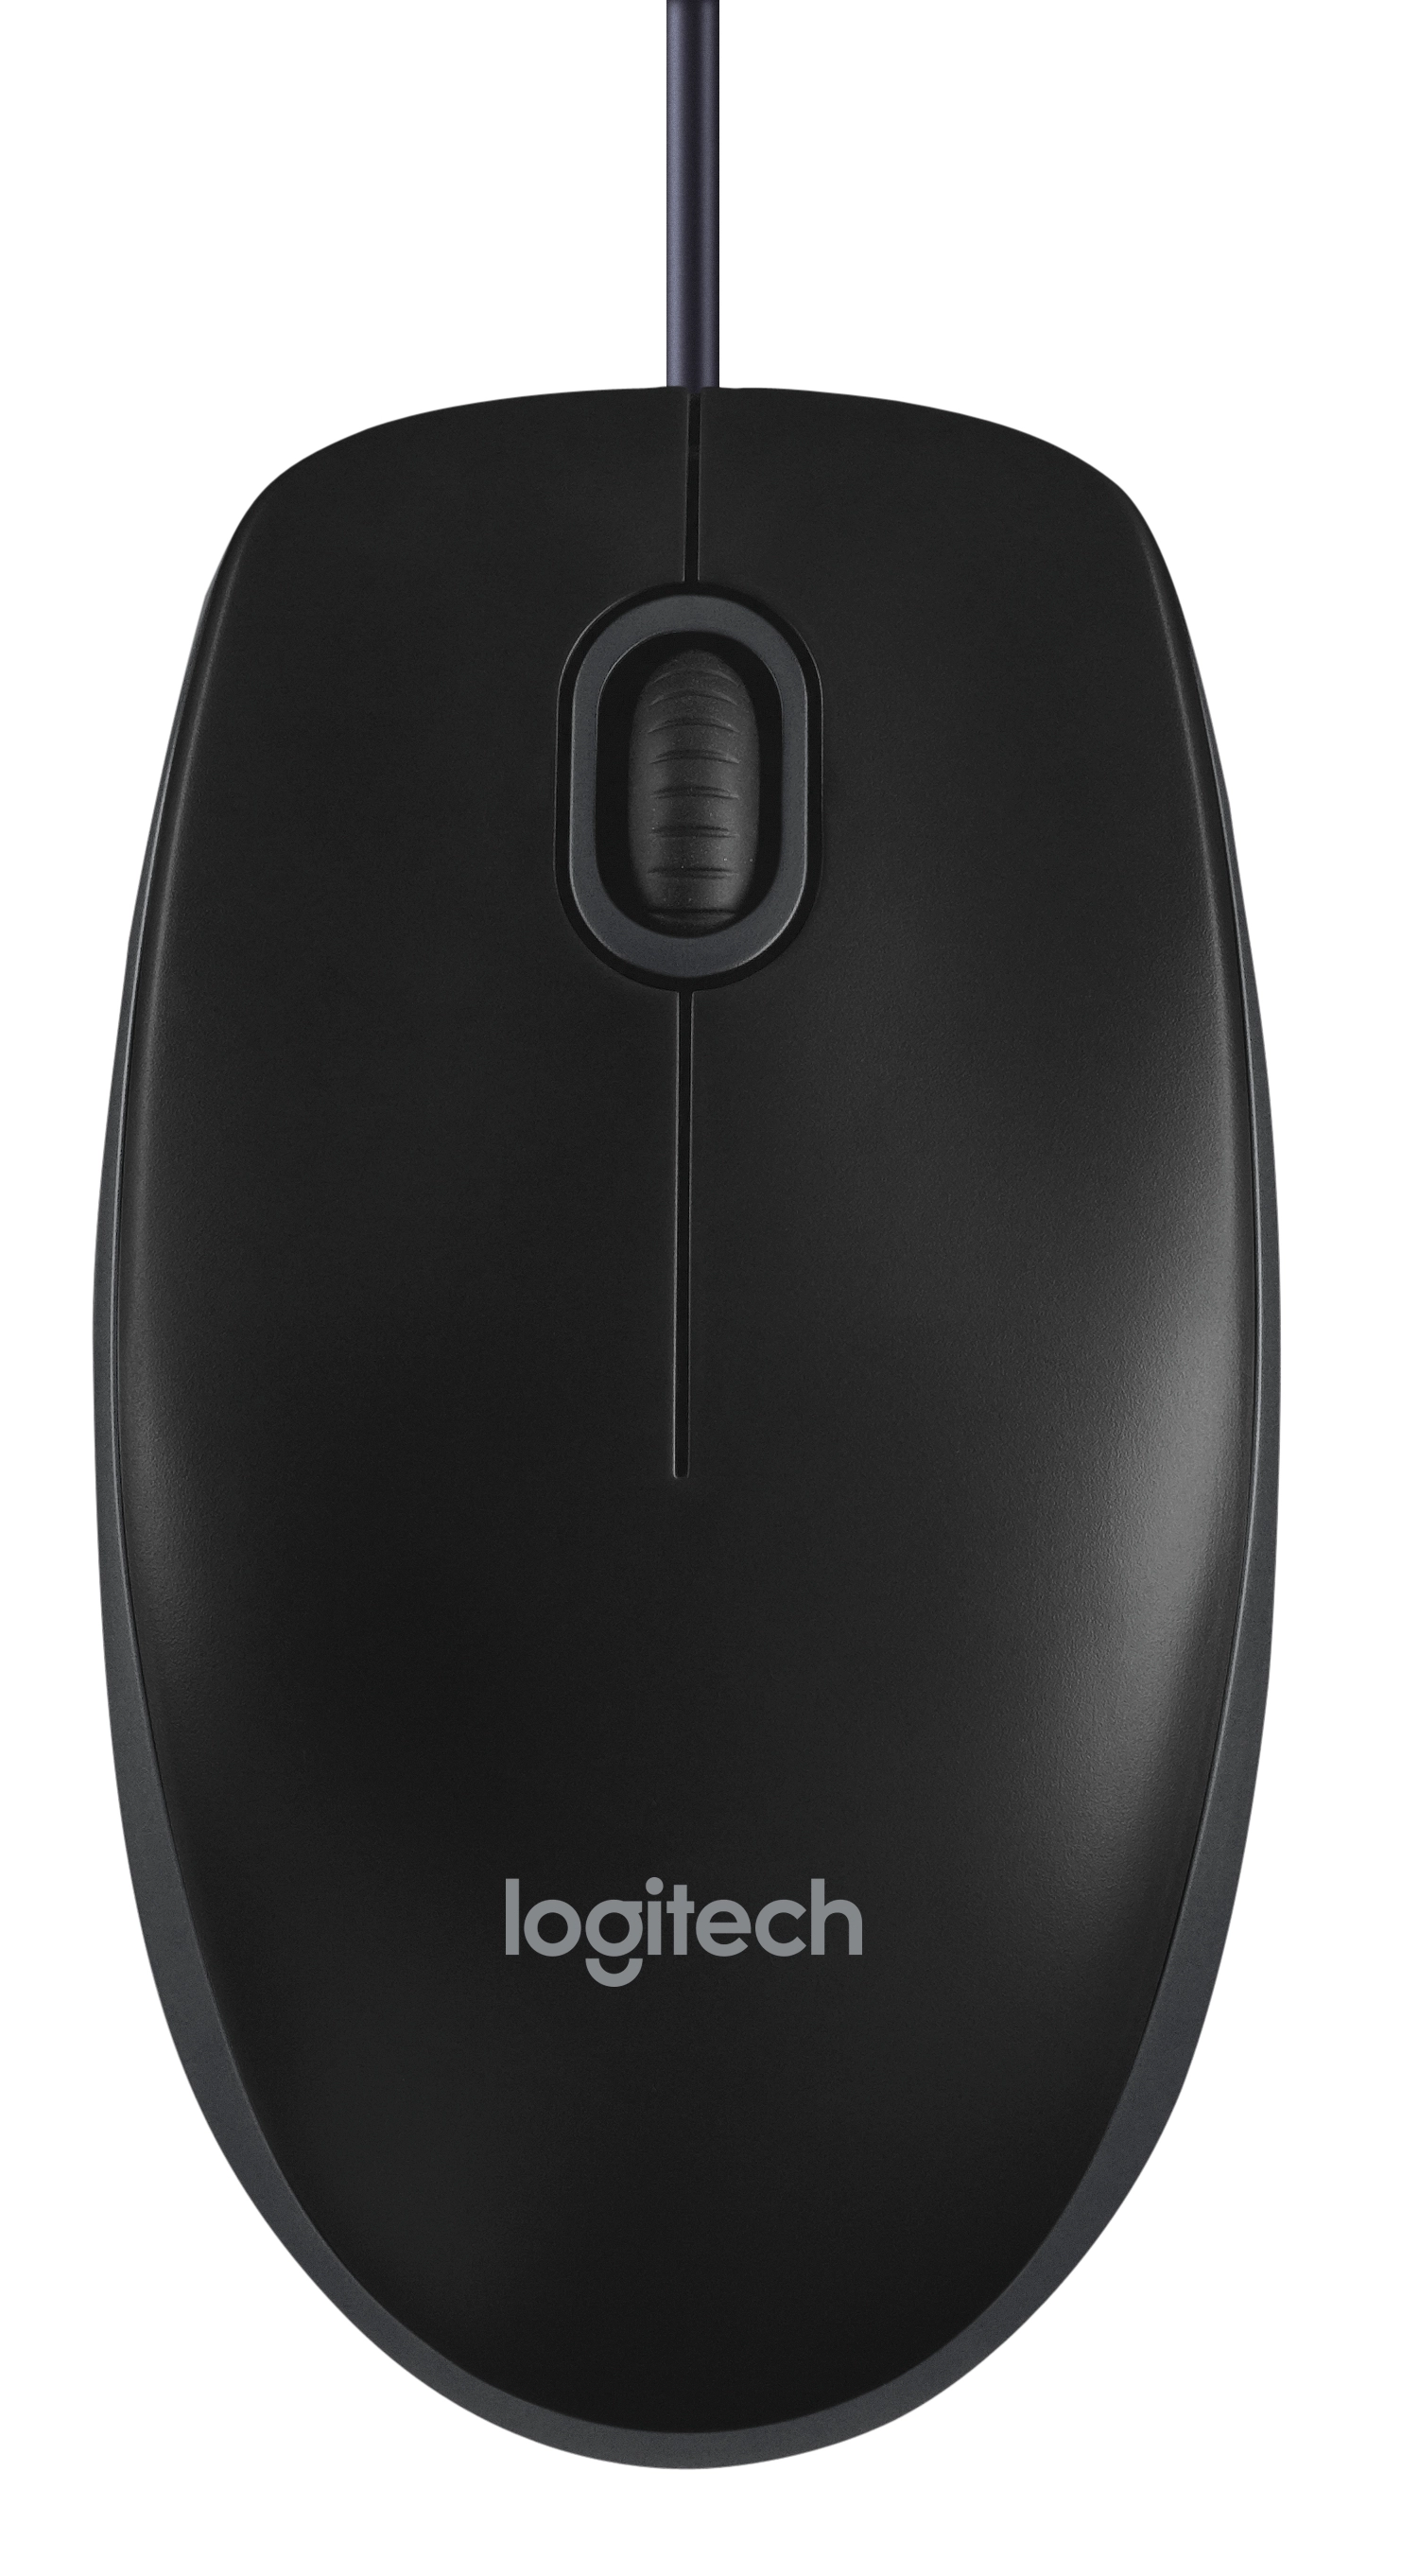 Logitech B100 - optische Maus